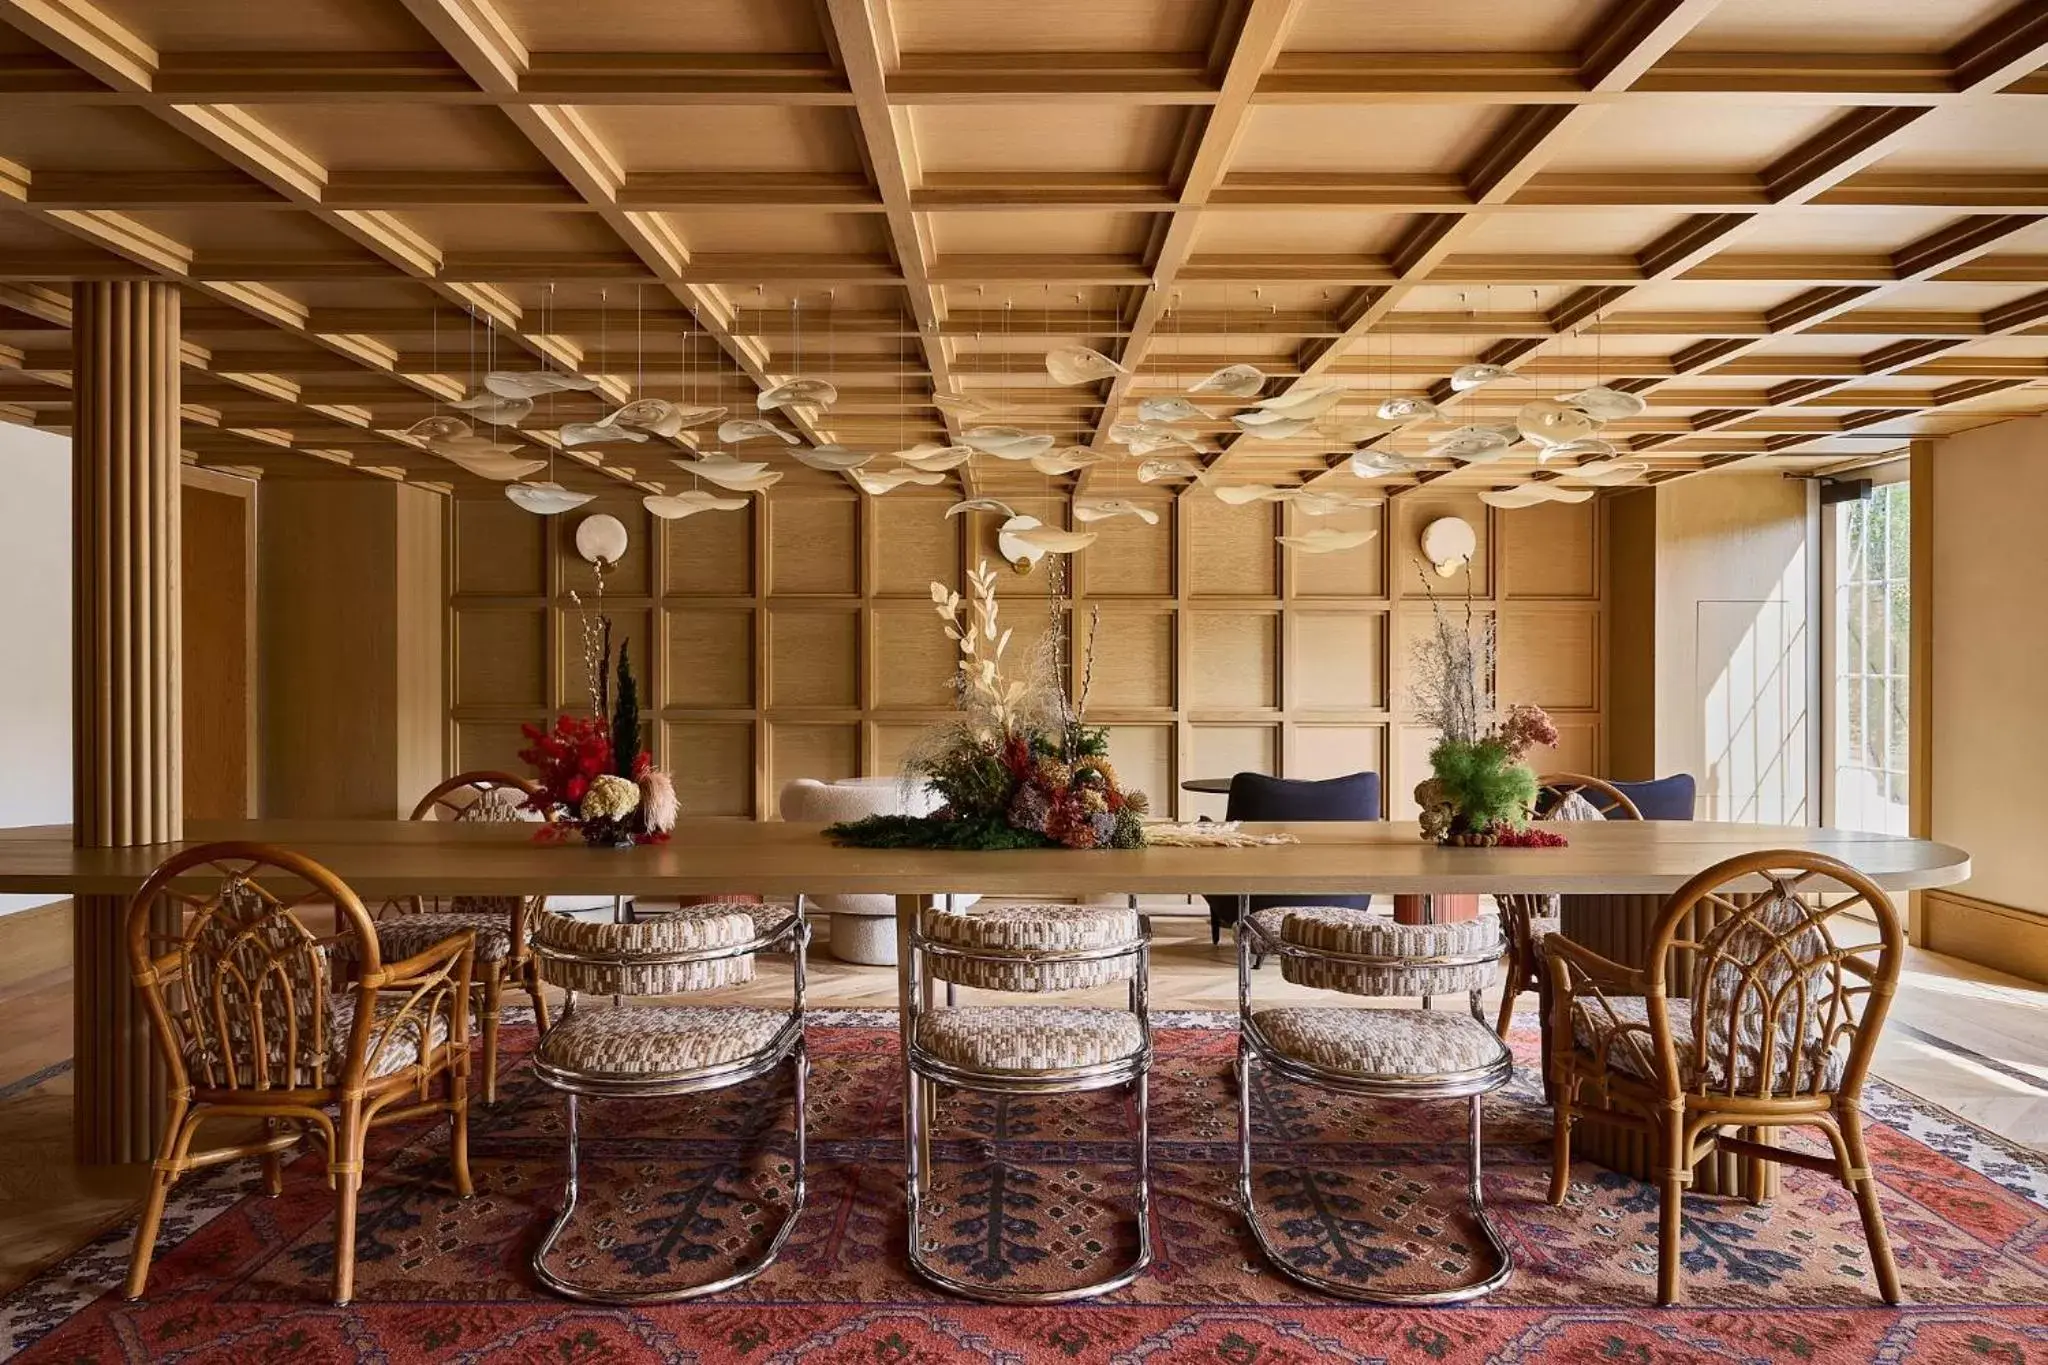 Lobby or reception in Faraway Martha's Vineyard